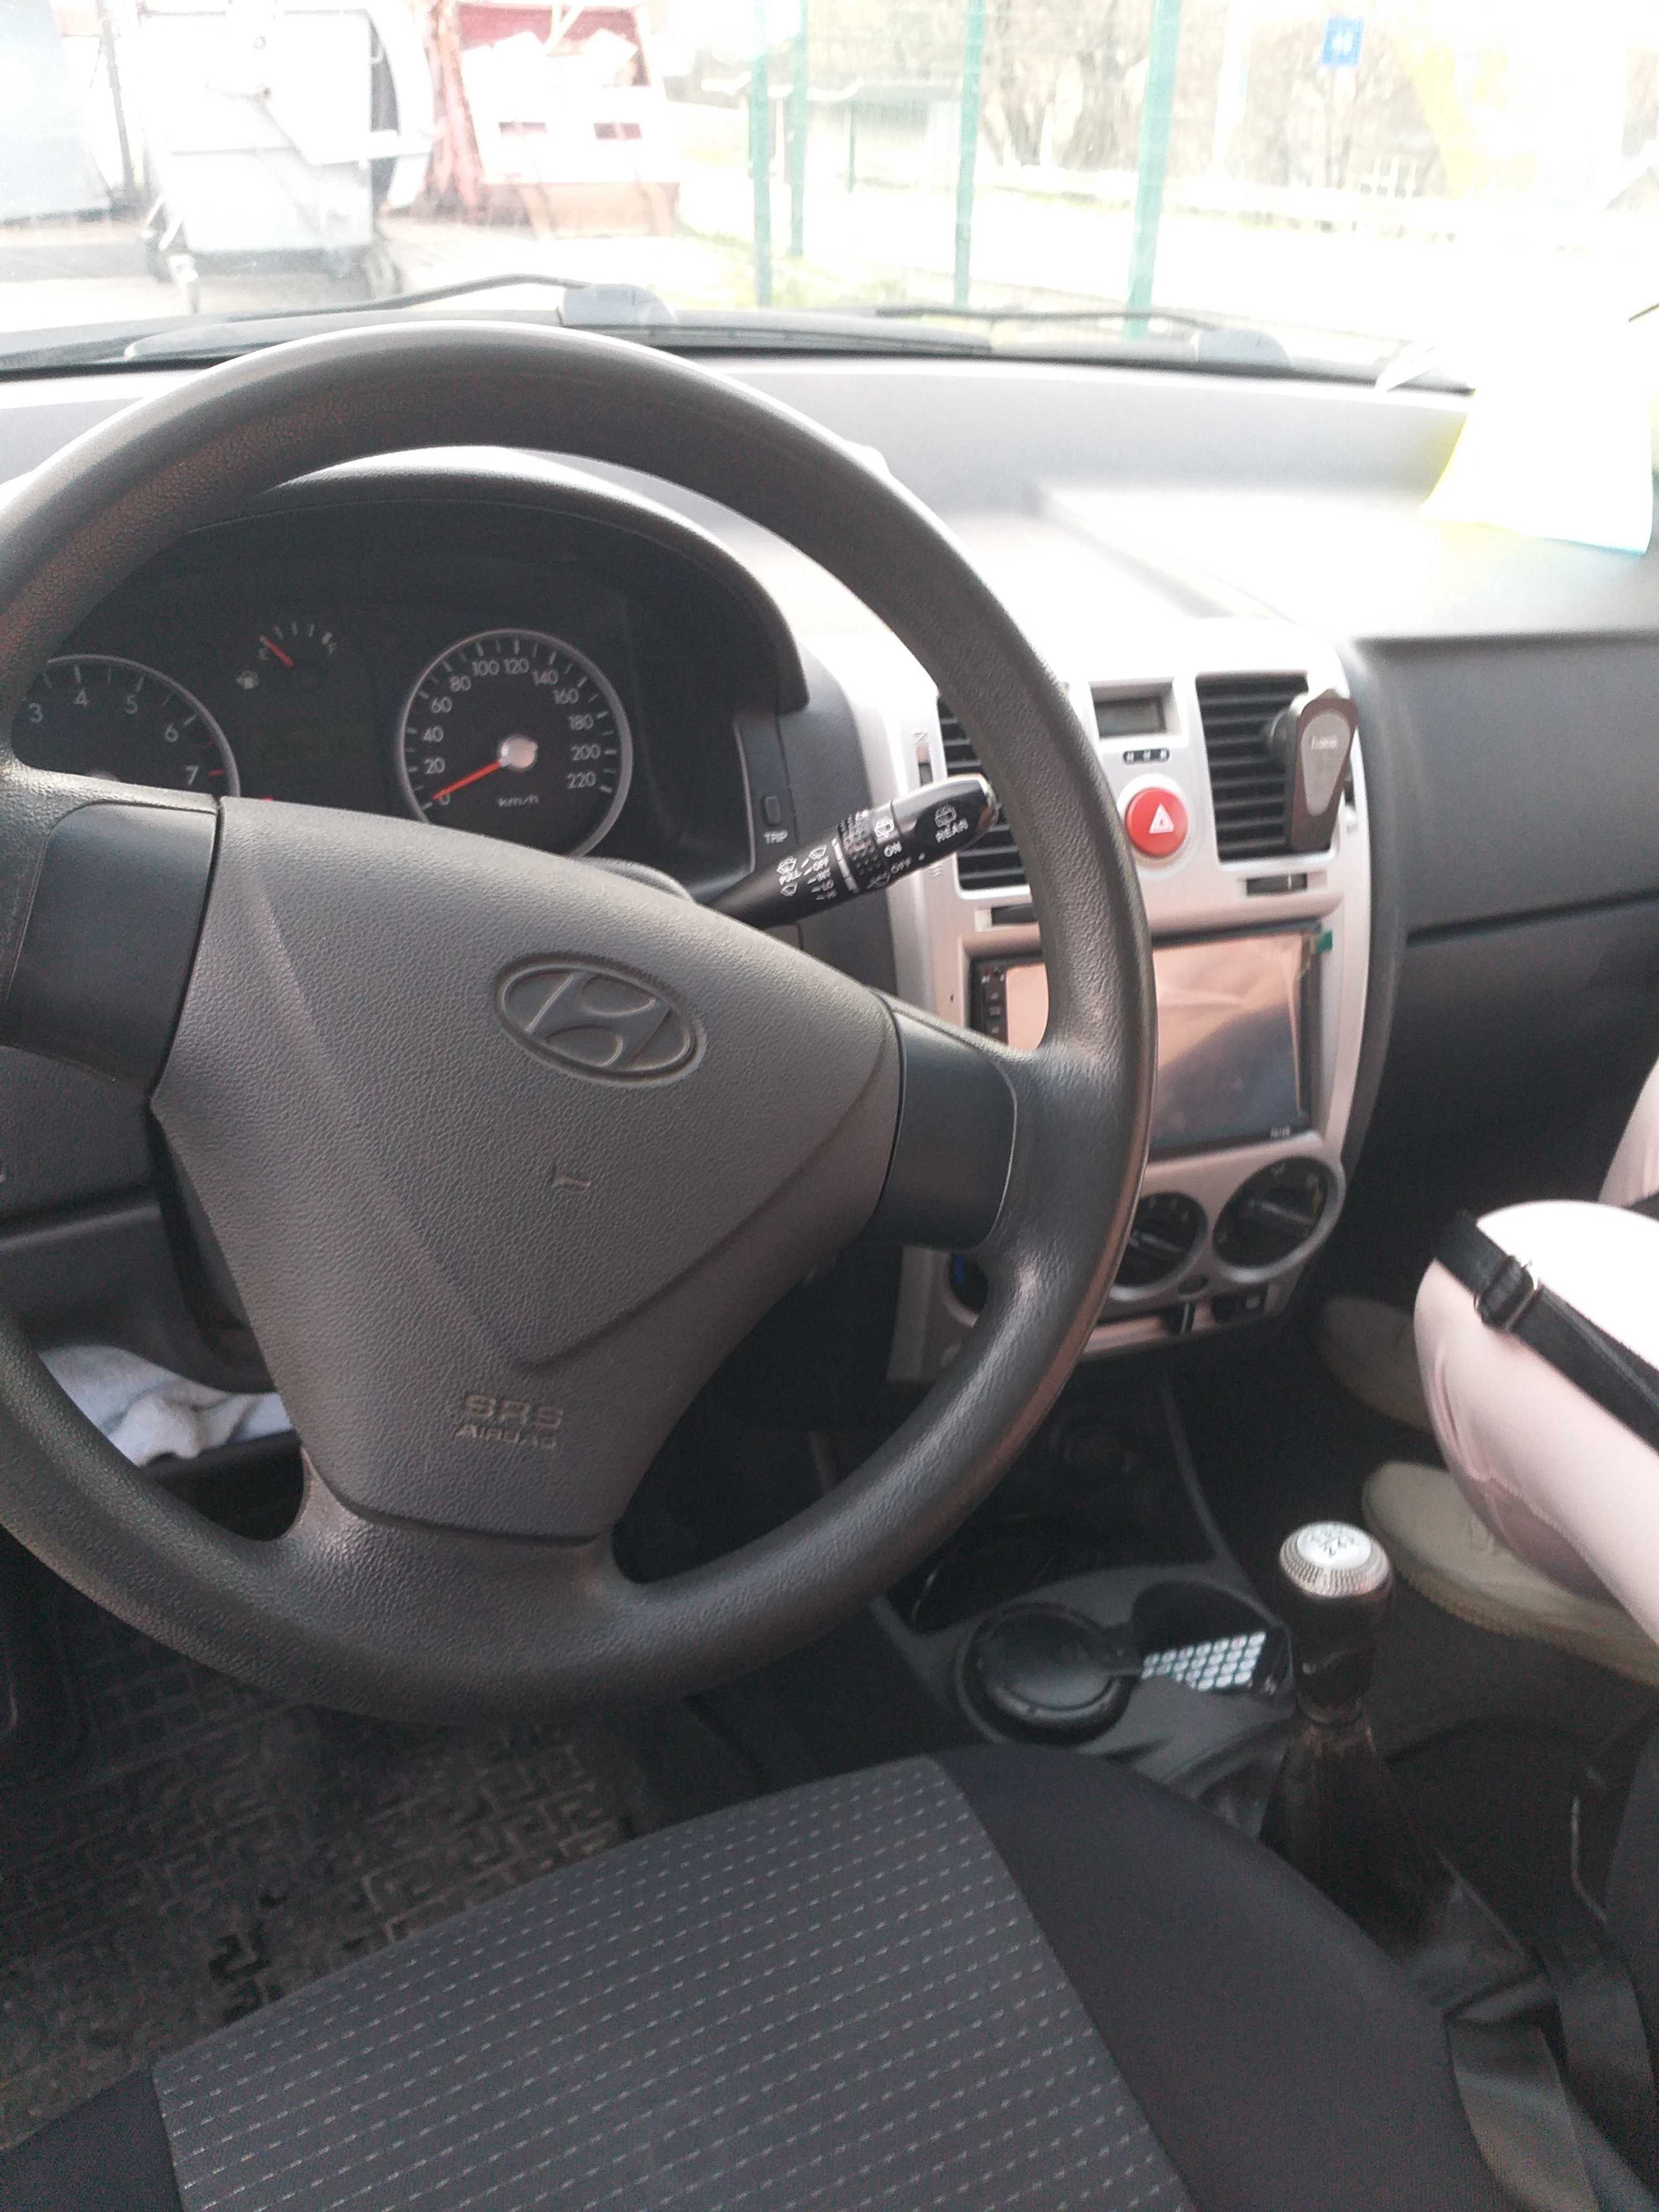 Продам Hyundai Getz 2006г 1.4л